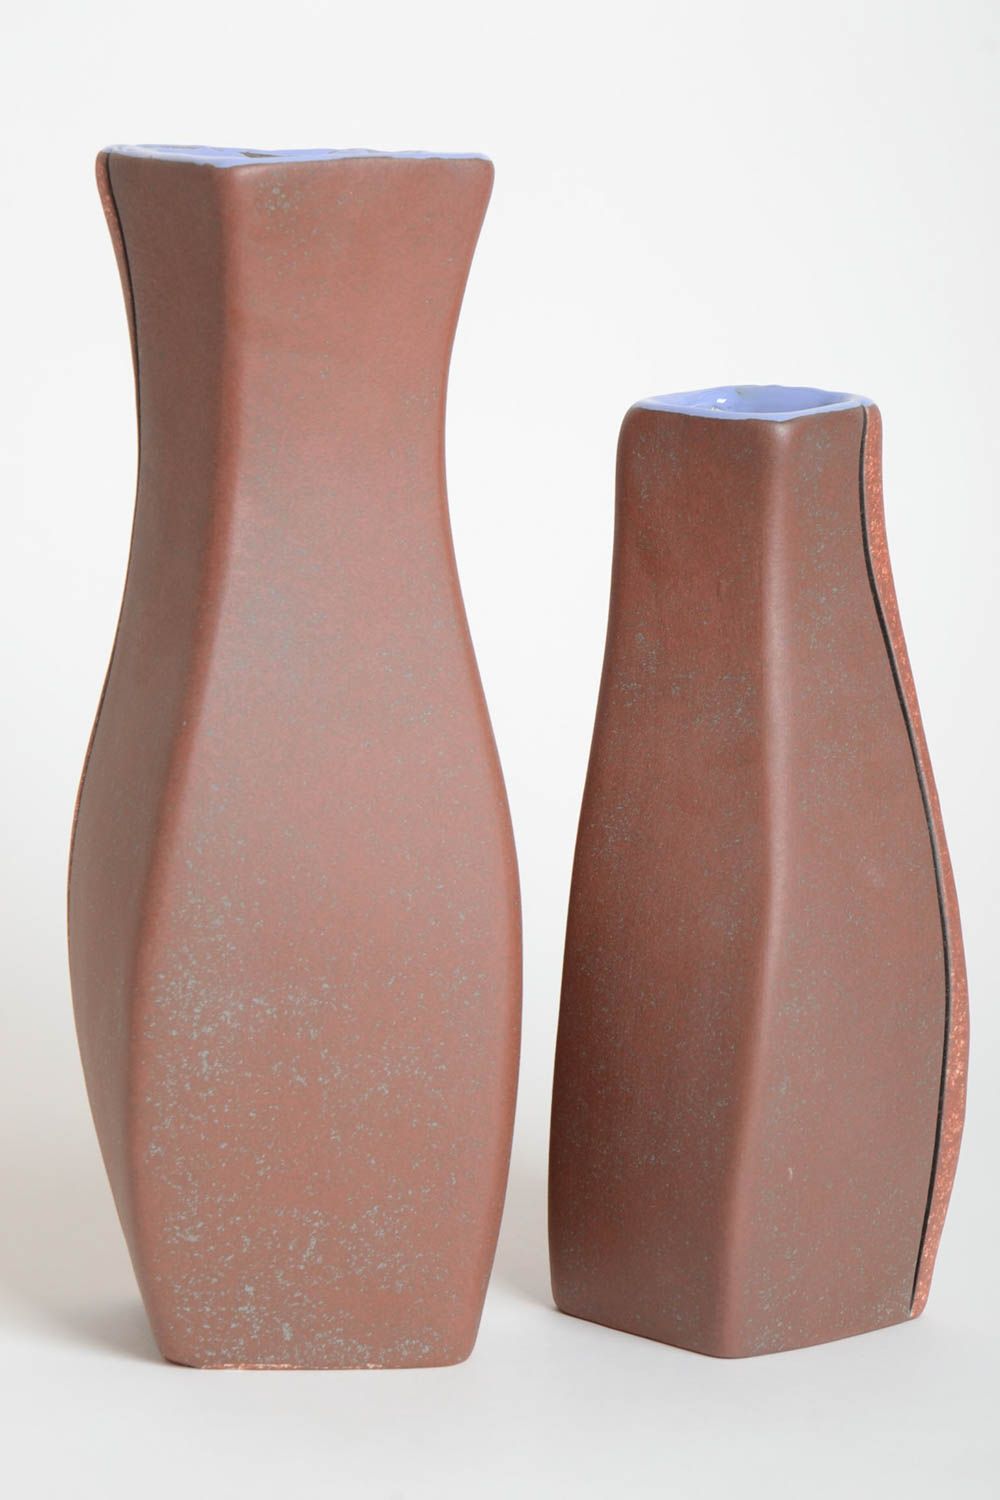 12 inches decorative ceramic vase set of 2 pieces 4,6 lb photo 4